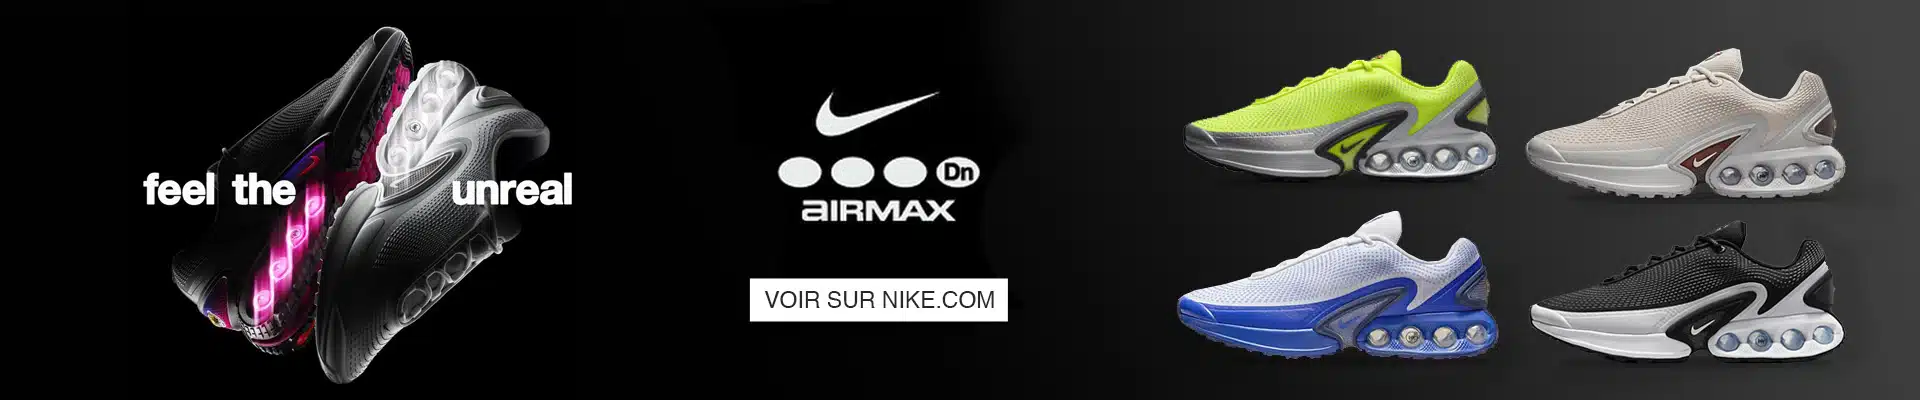 Nike price Air Max Dn